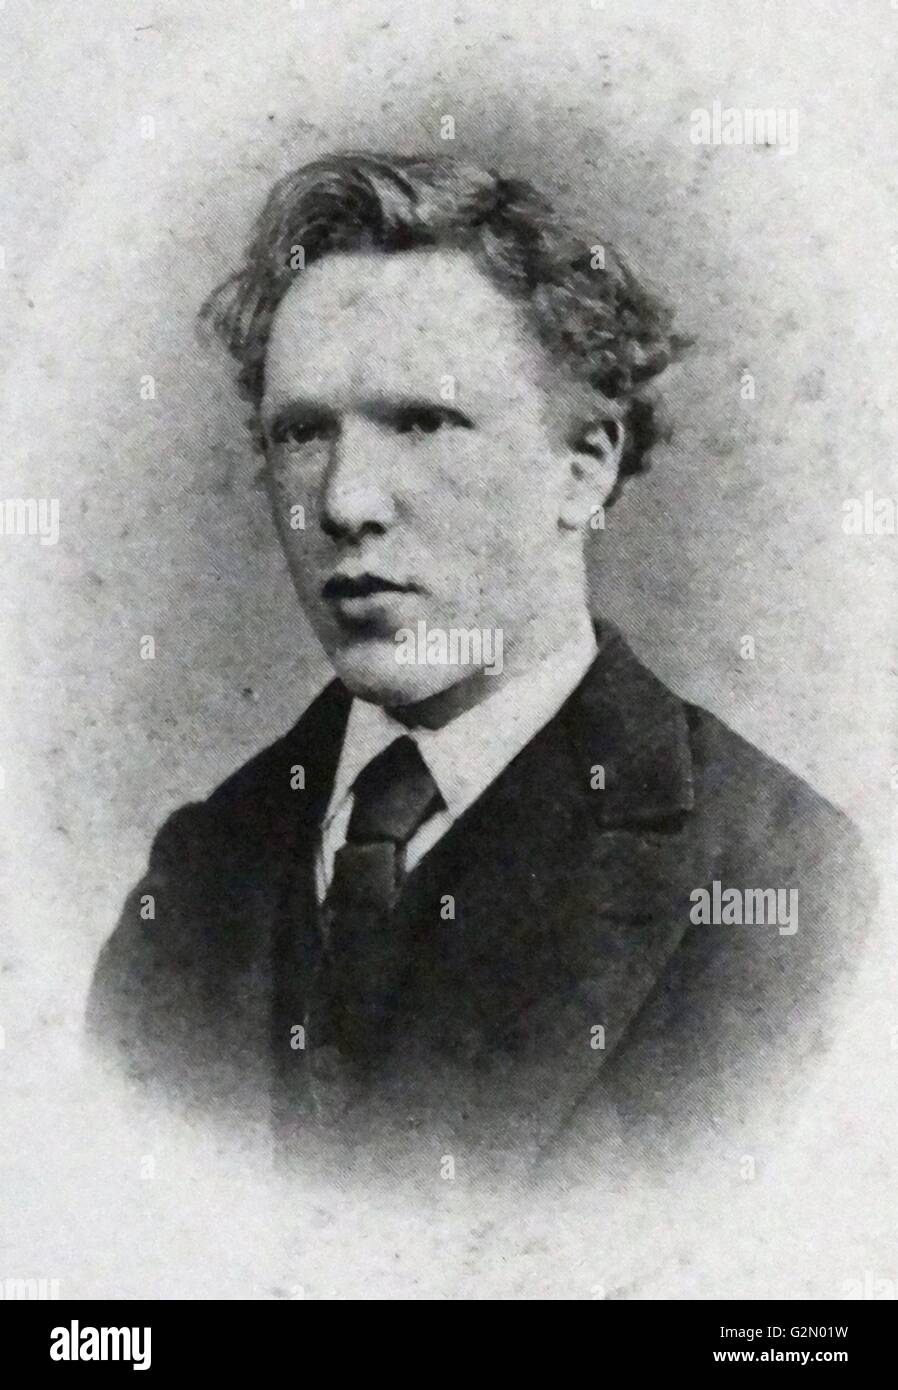 Testa e spalle ritratto del famoso artista olandese Vincent Van Gogh (30 marzo 1853 - 29 luglio 1890), fotografia scattata nel 1871. Foto Stock